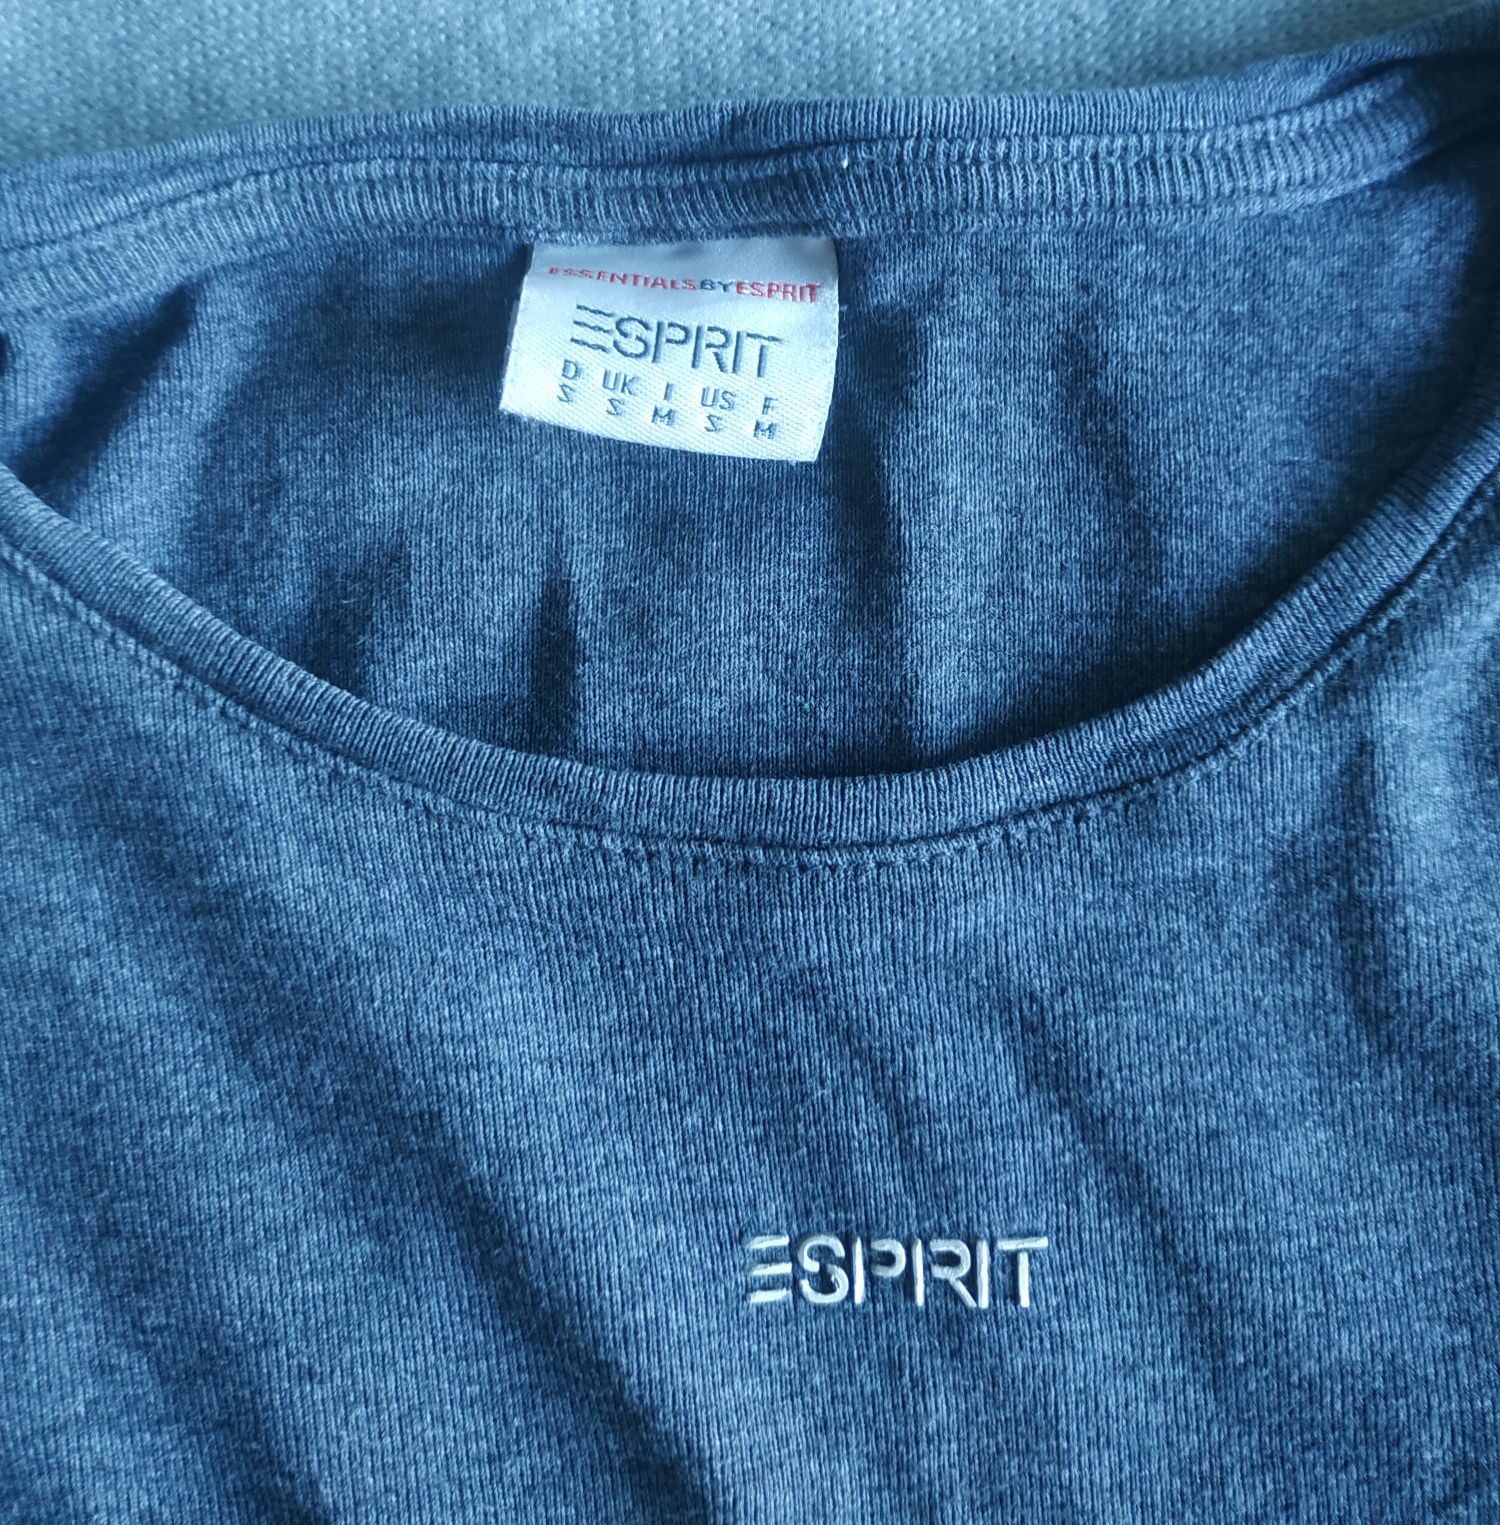 Koszulka damska z długim rękawem marki "Esprit"